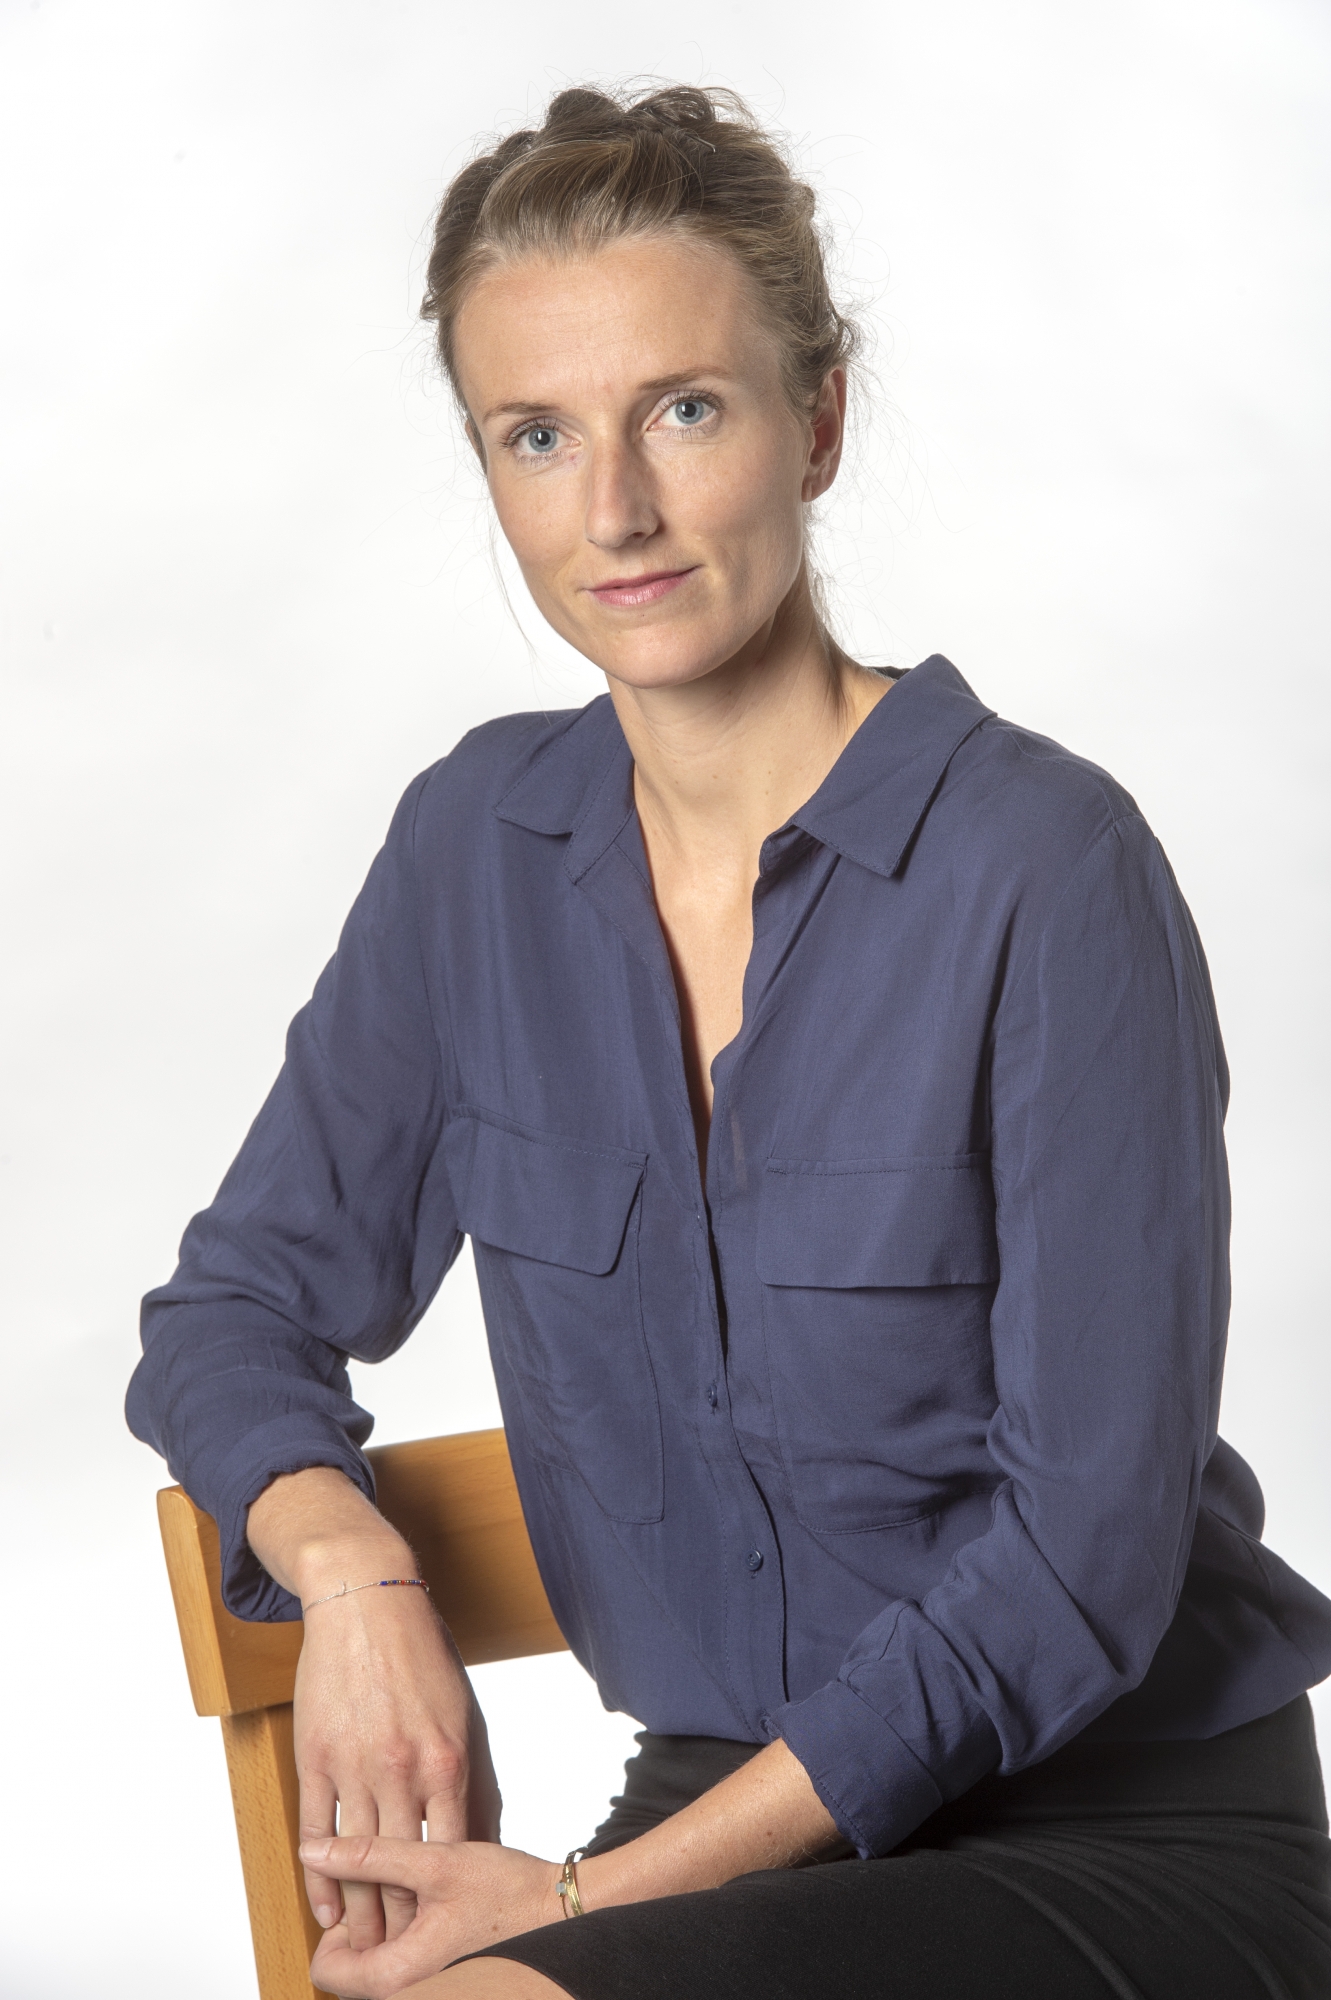 Sion - 25 janvier 2019 - Sophie Dorsaz, journaliste le Nouvelliste.